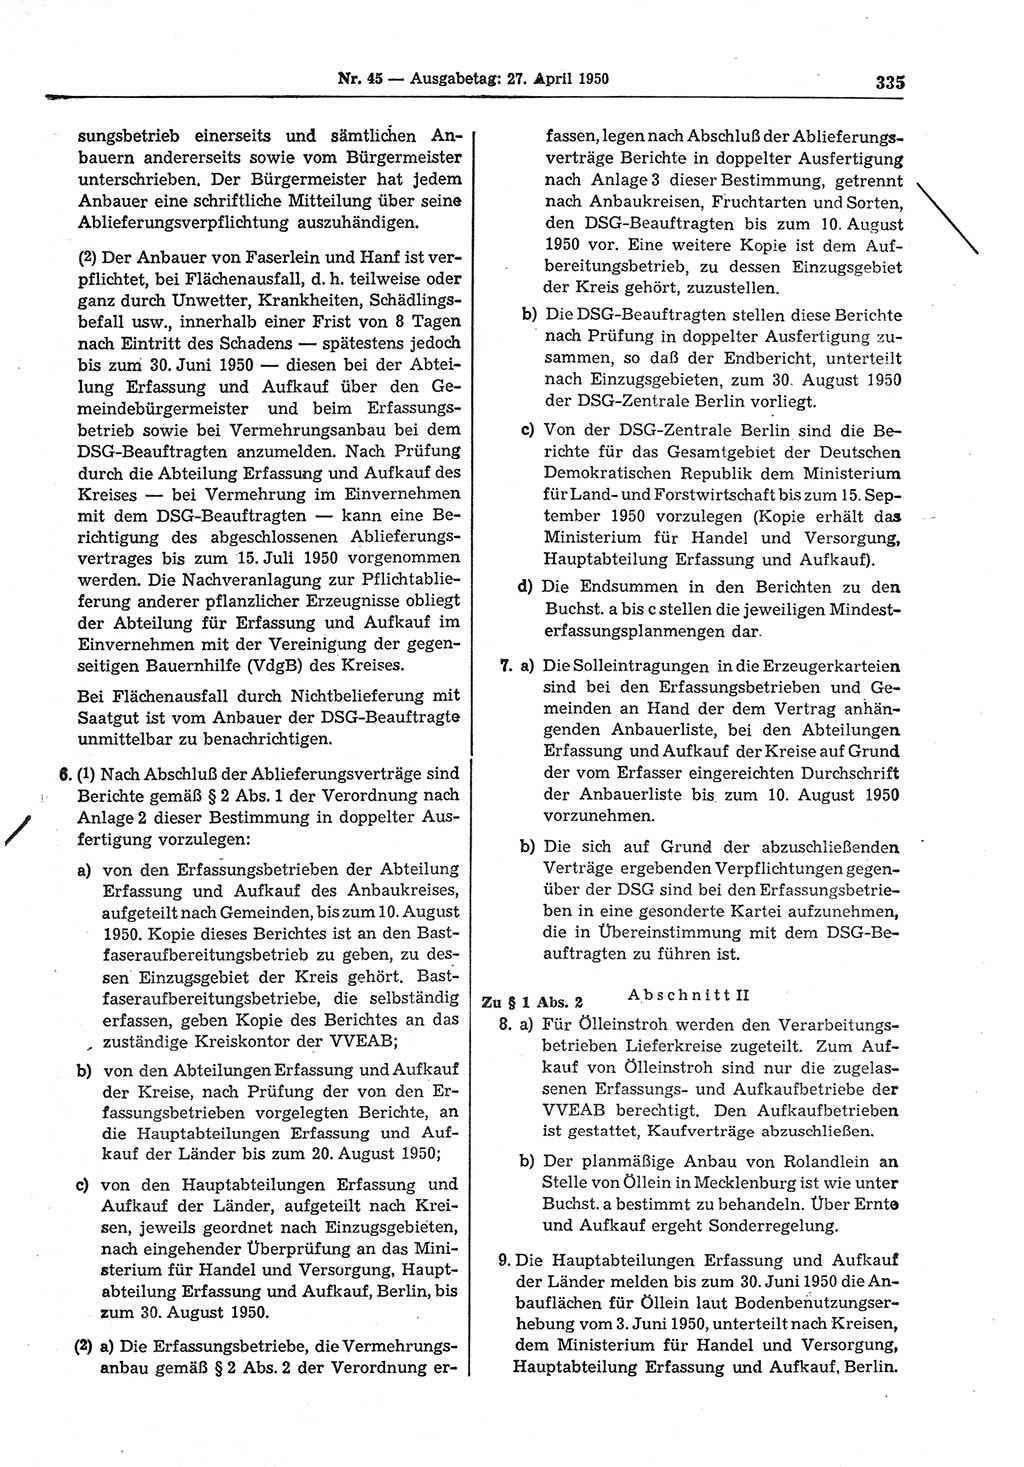 Gesetzblatt (GBl.) der Deutschen Demokratischen Republik (DDR) 1950, Seite 335 (GBl. DDR 1950, S. 335)